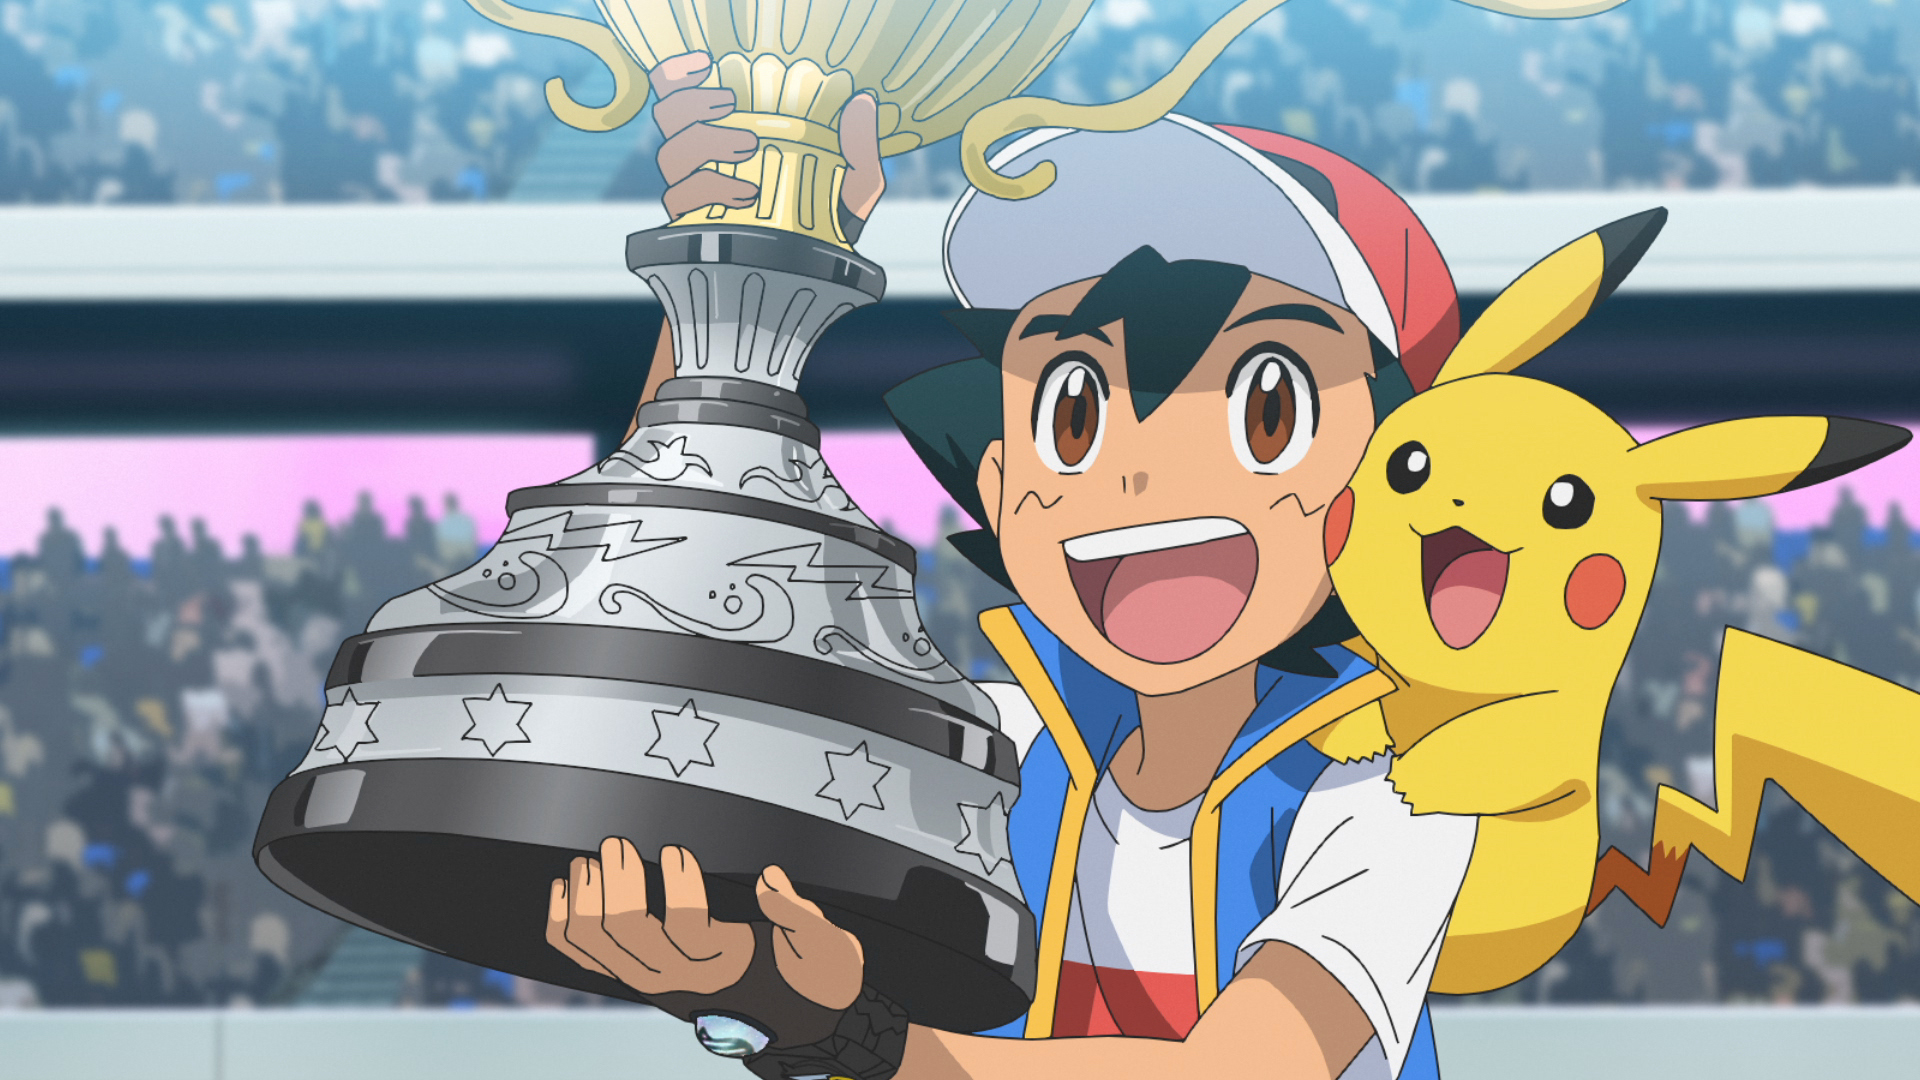 ¡Por fin! Ash Ketchum es el mejor Entrenador Pokémon del mundo